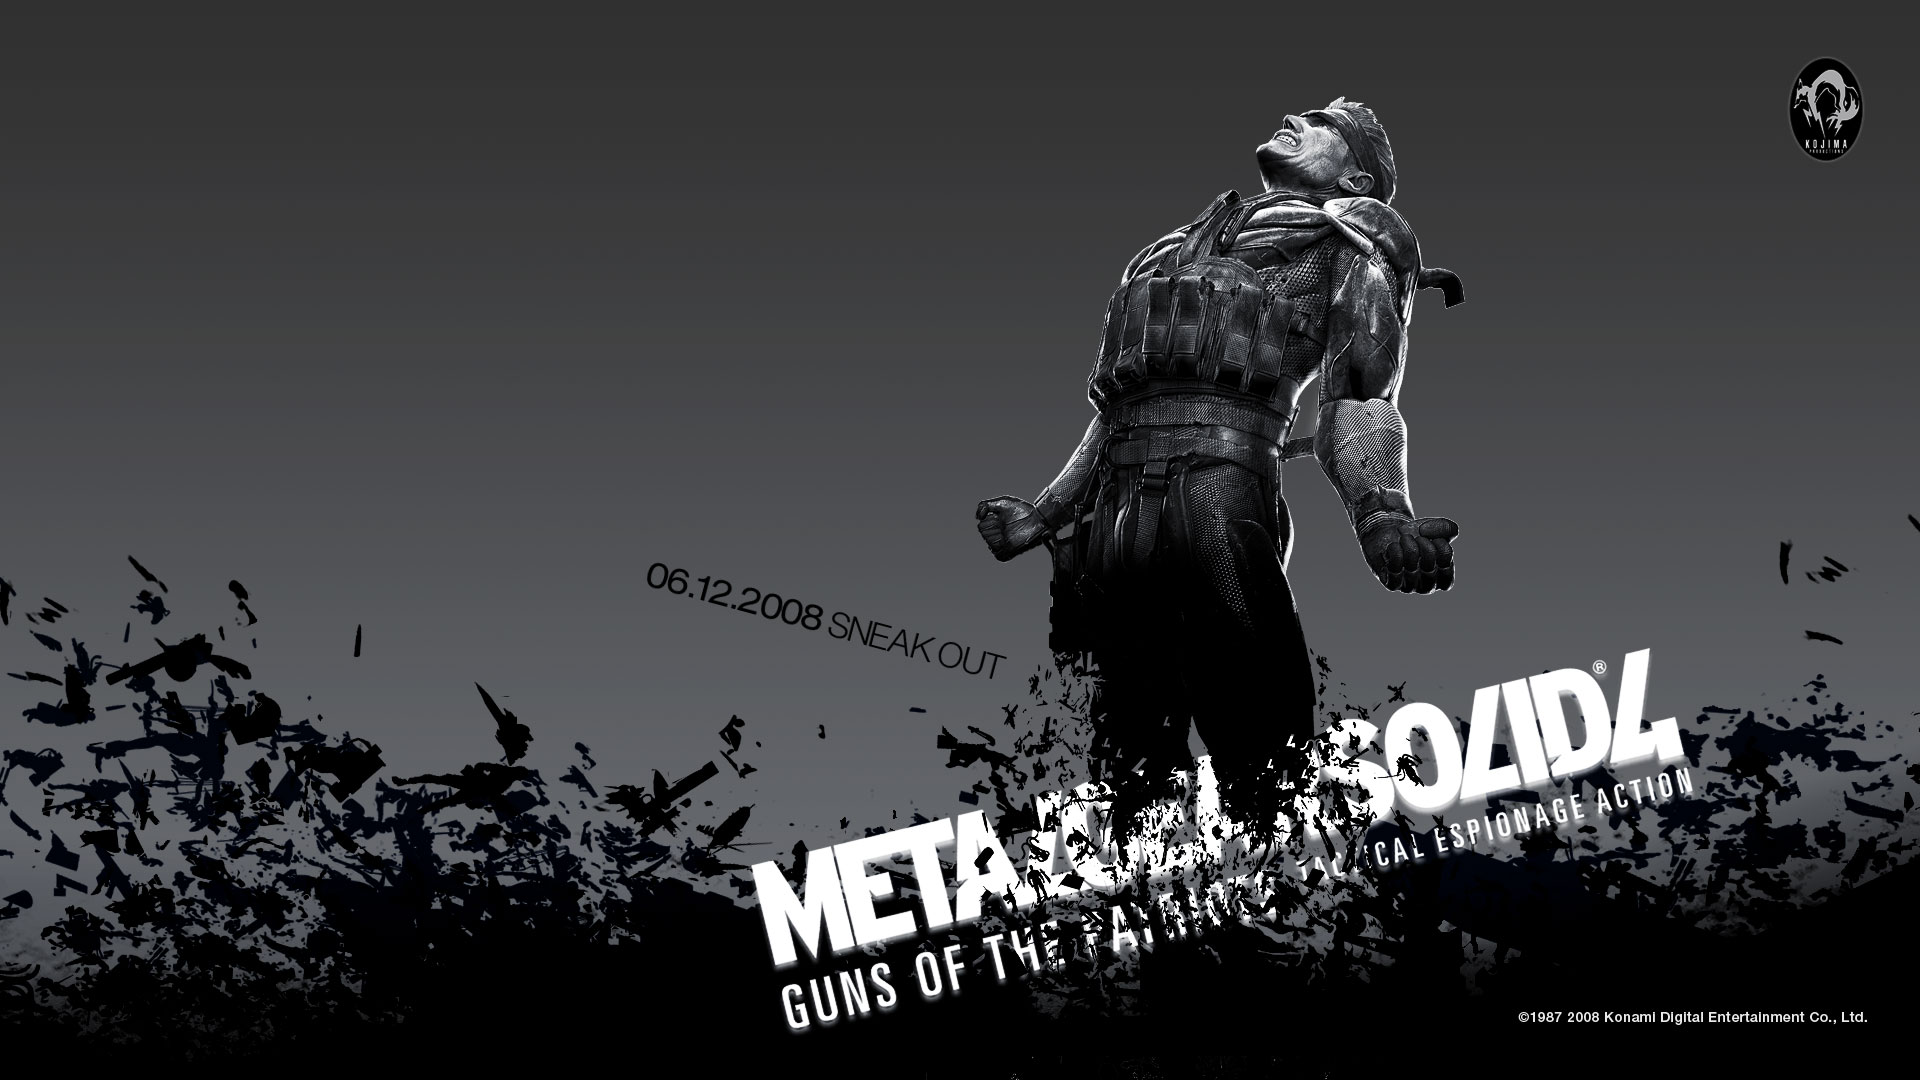 Melhores papéis de parede de Metal Gear Solid 4: Guns Of The Patriots para tela do telefone